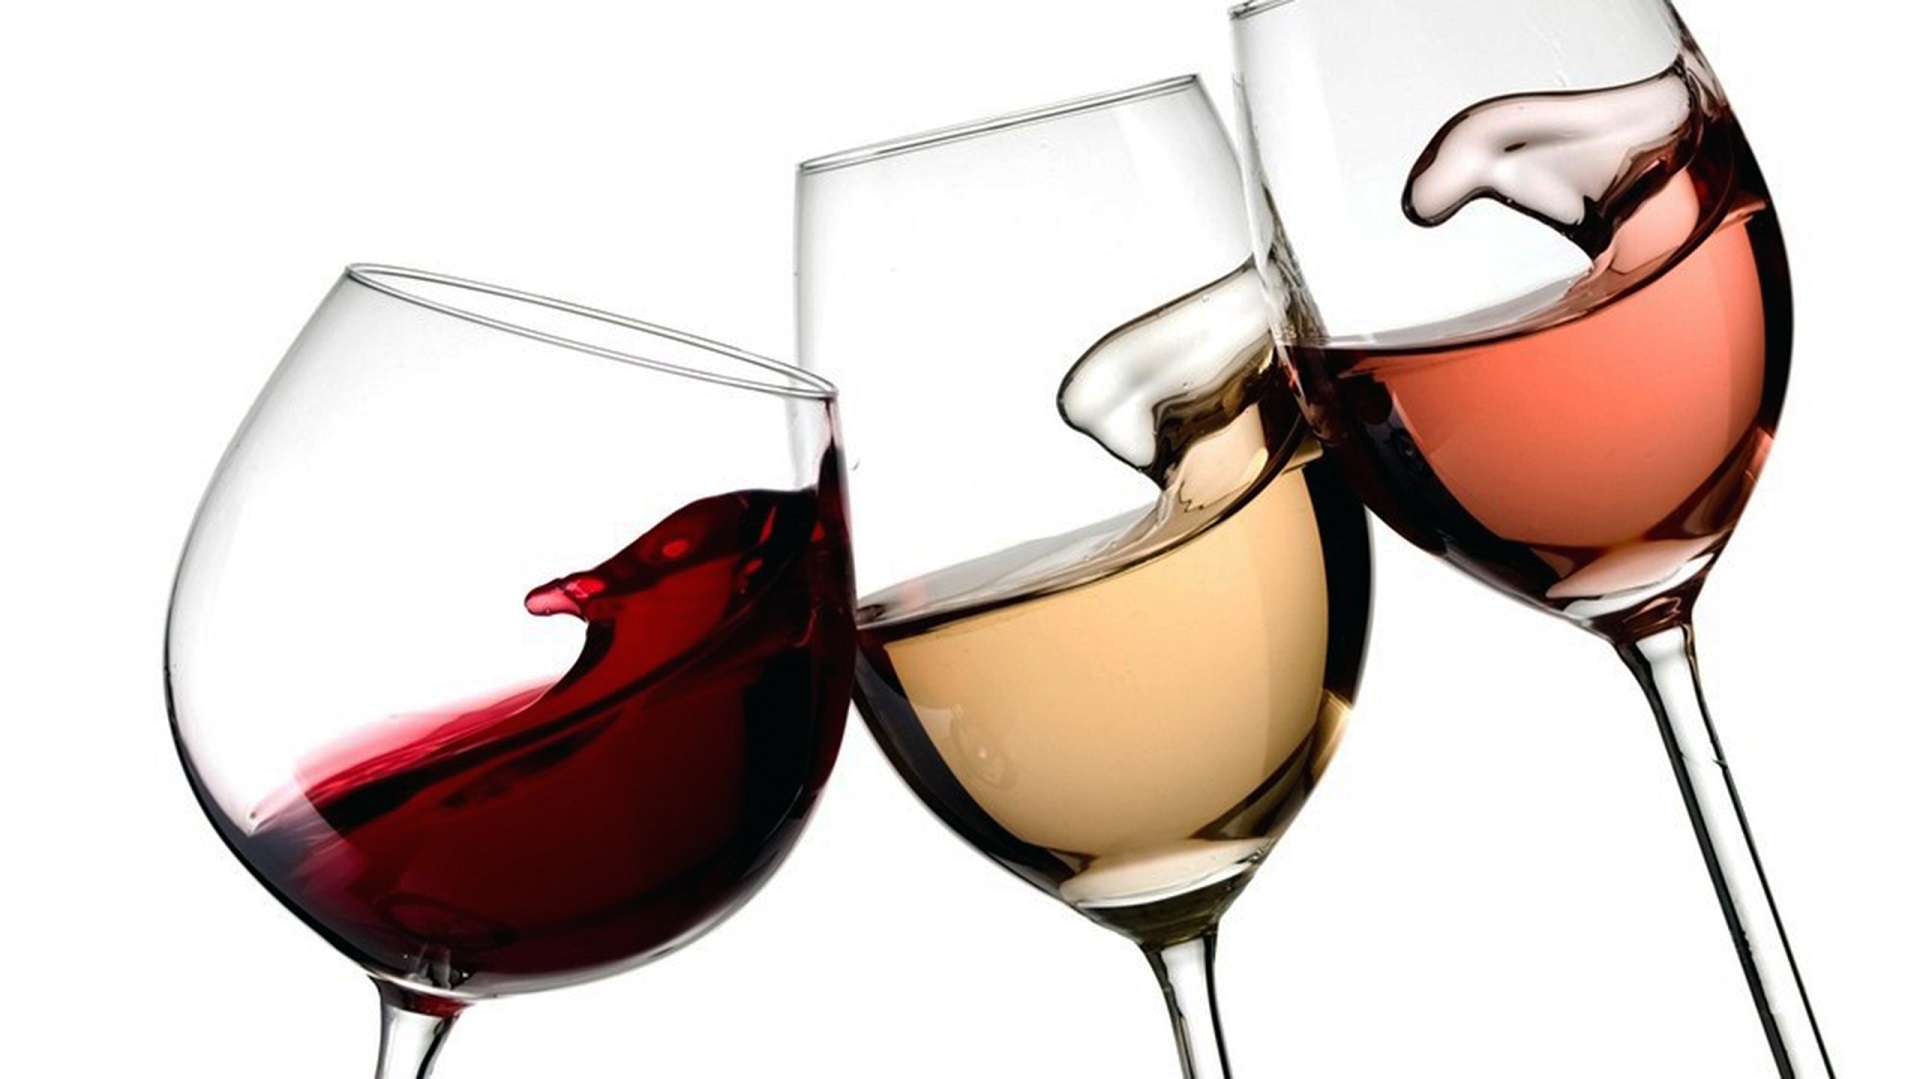 نوآوری بسته بندی یک راه حل آسان برای کیفیت و لذت بردن از شراب است